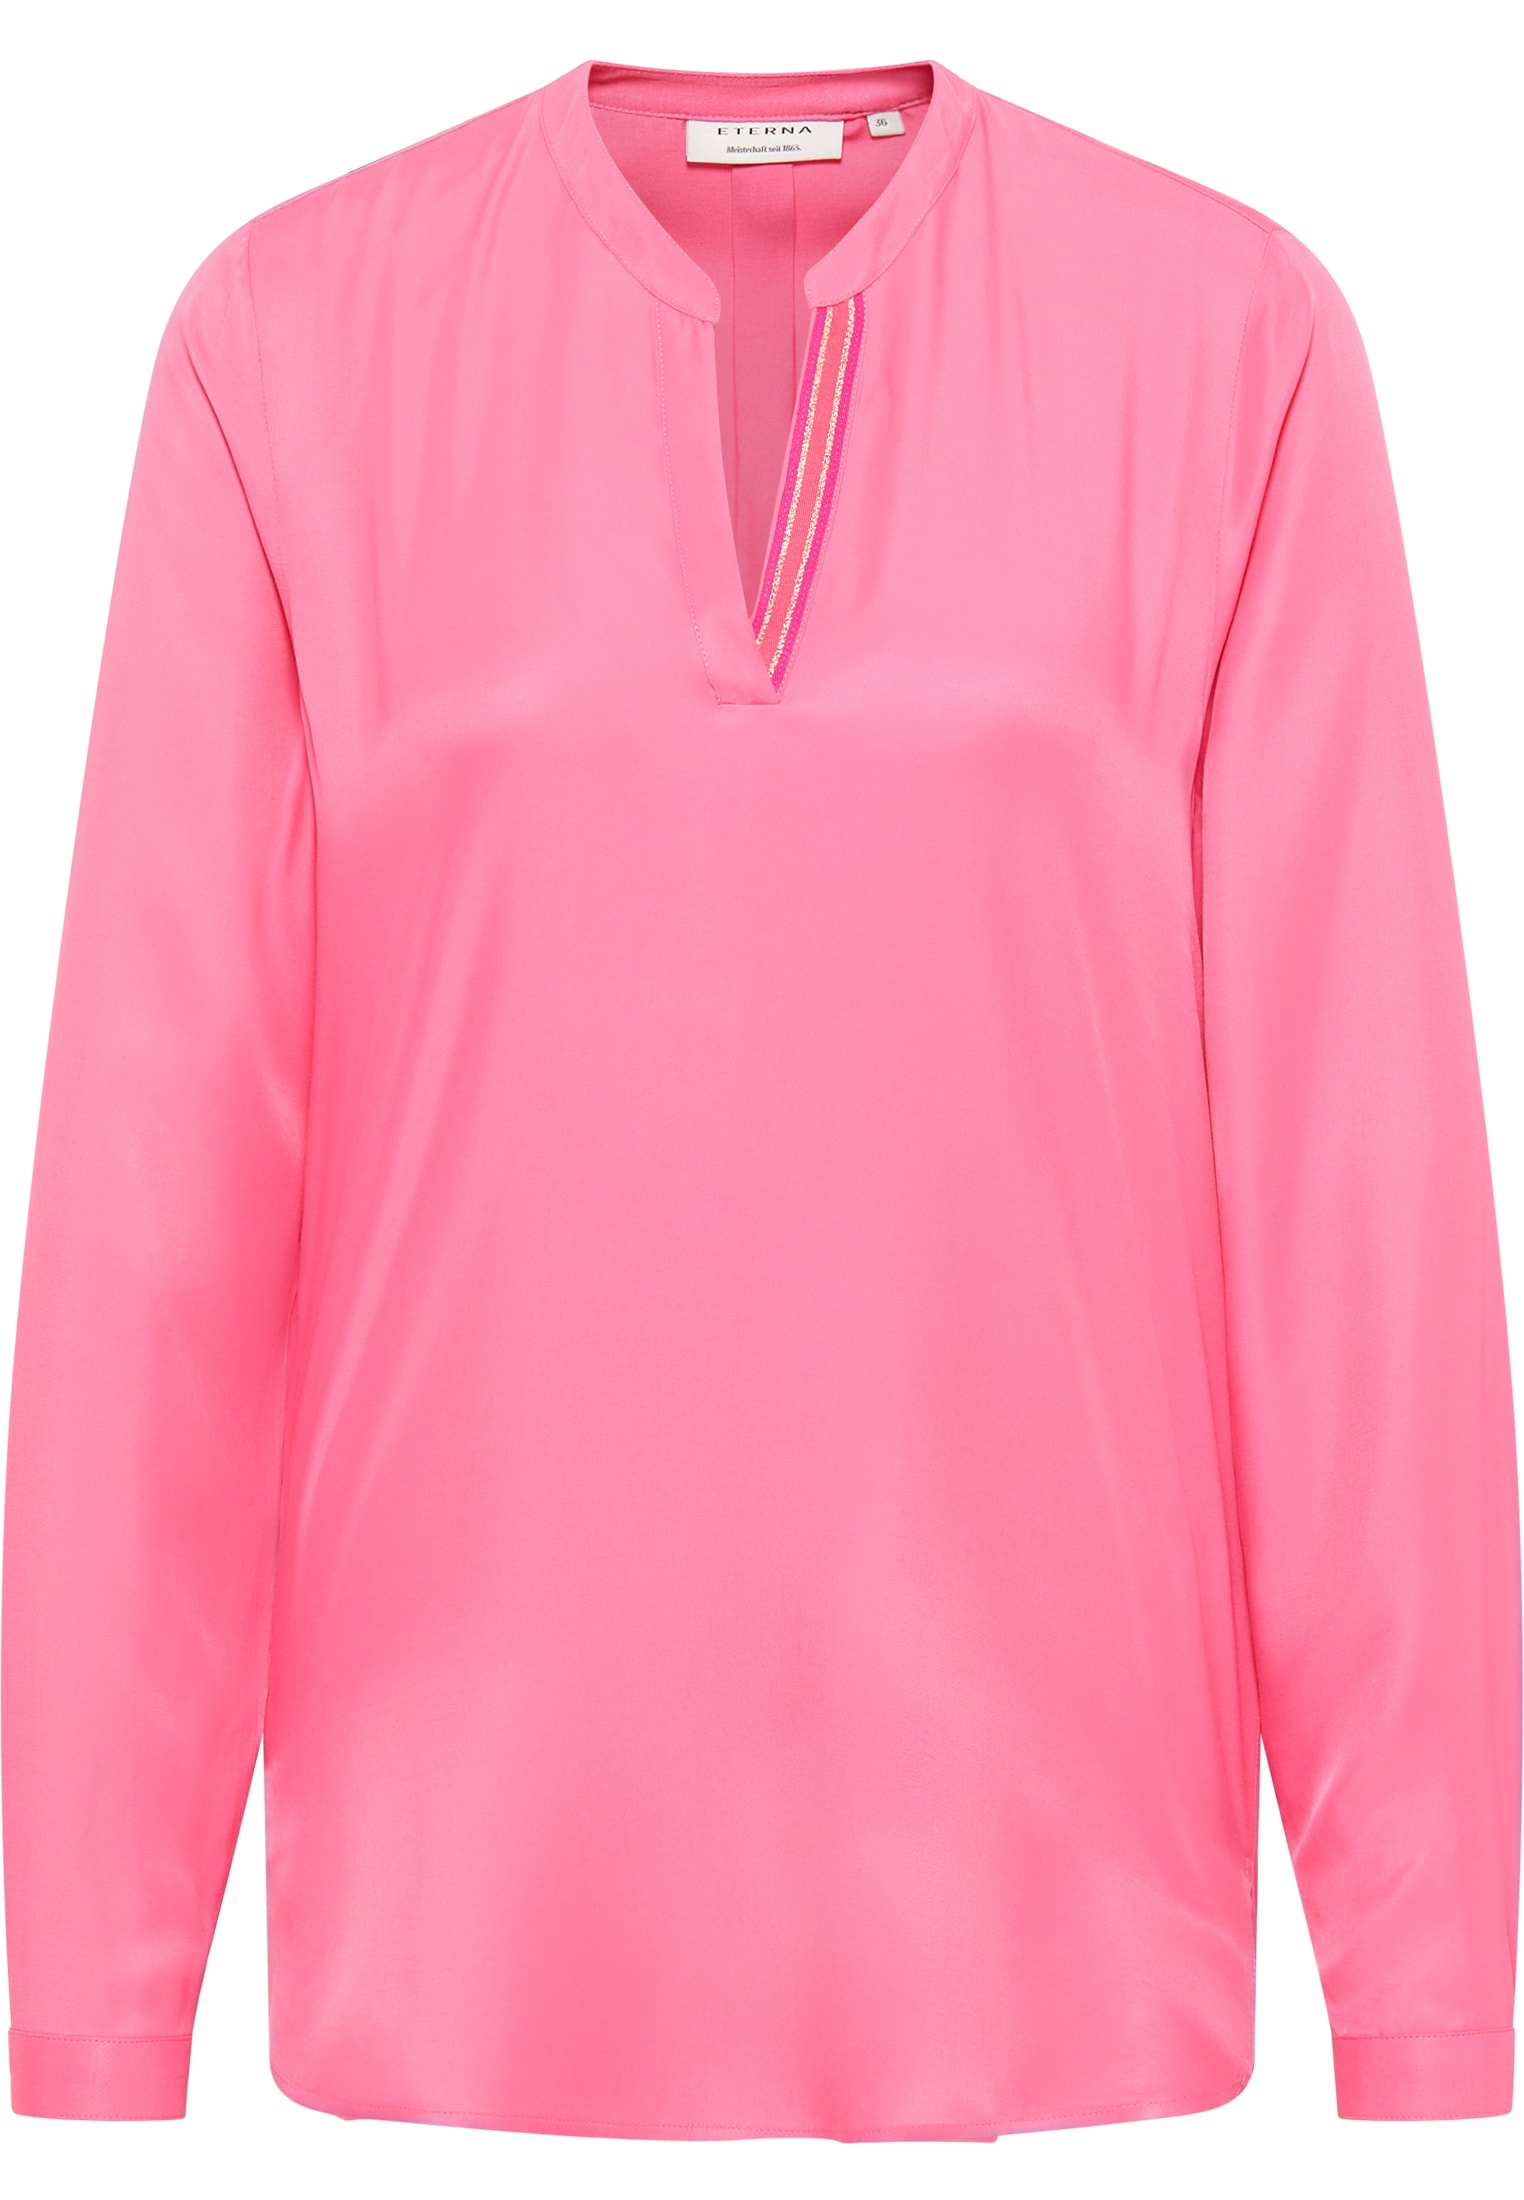 Viscose Shirt Langarm | | pink | pink 36 in unifarben Bluse | 2BL04272-15-21-36-1/1